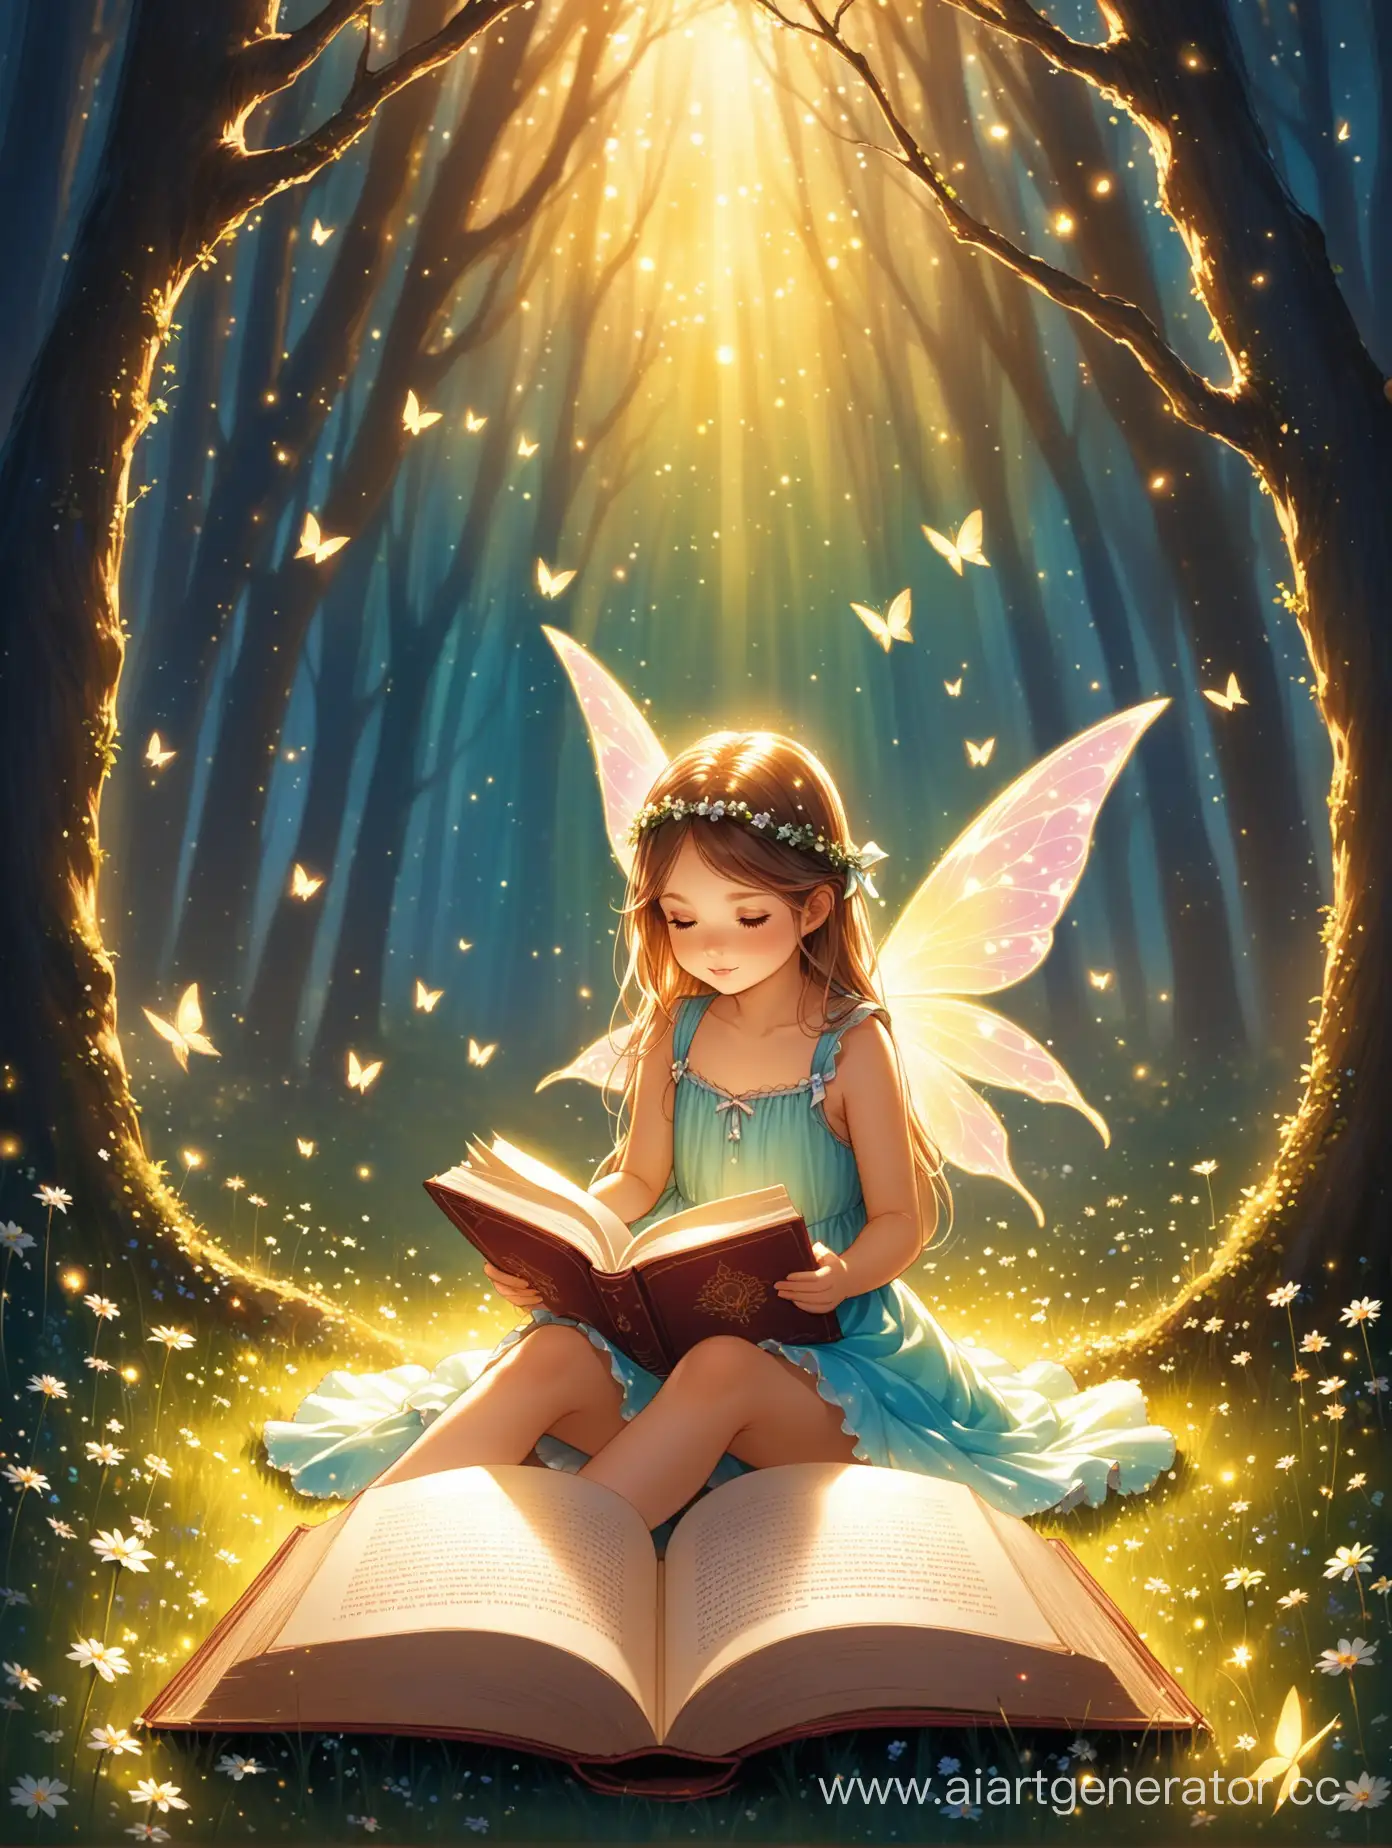 сидит маленькая девочка, спиной к нам, с открытой книгой, а из книги выходит целый мир сказок и волшебства